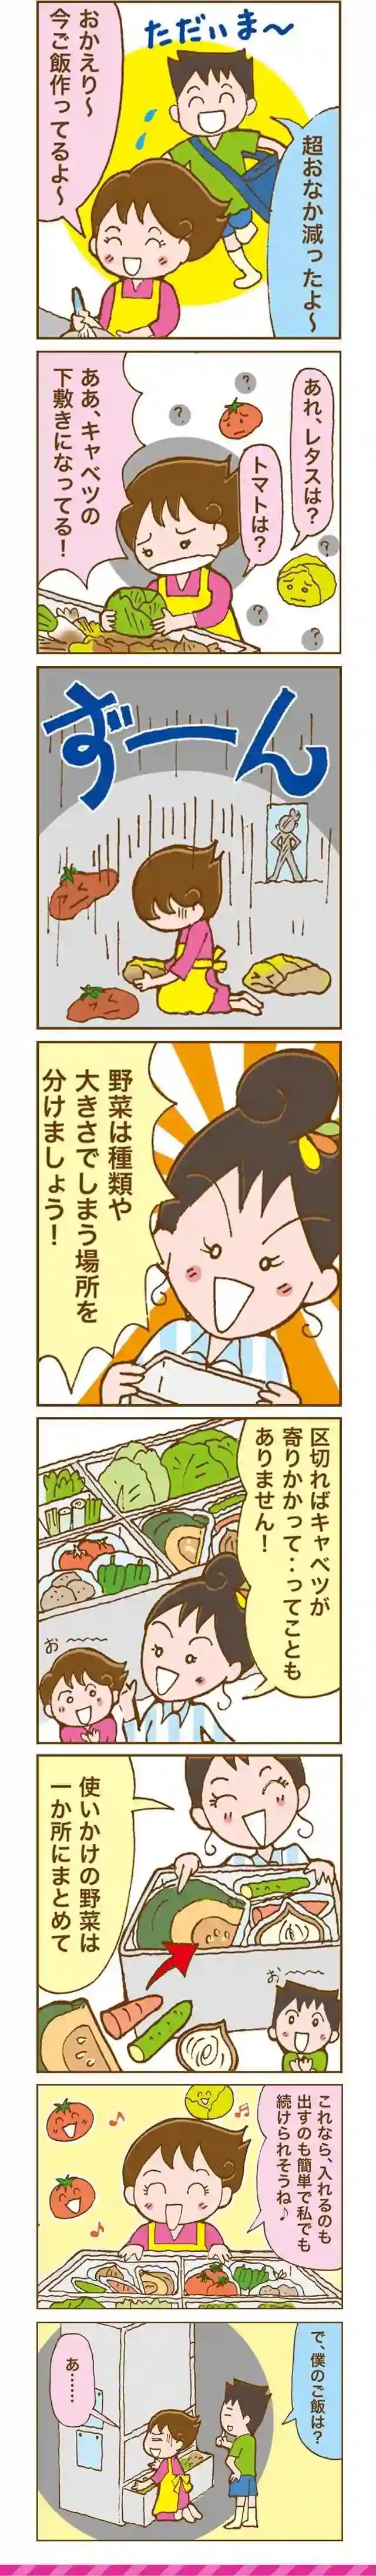 漫画第6話野菜をフレッシュな状態で使い切る収納法-1